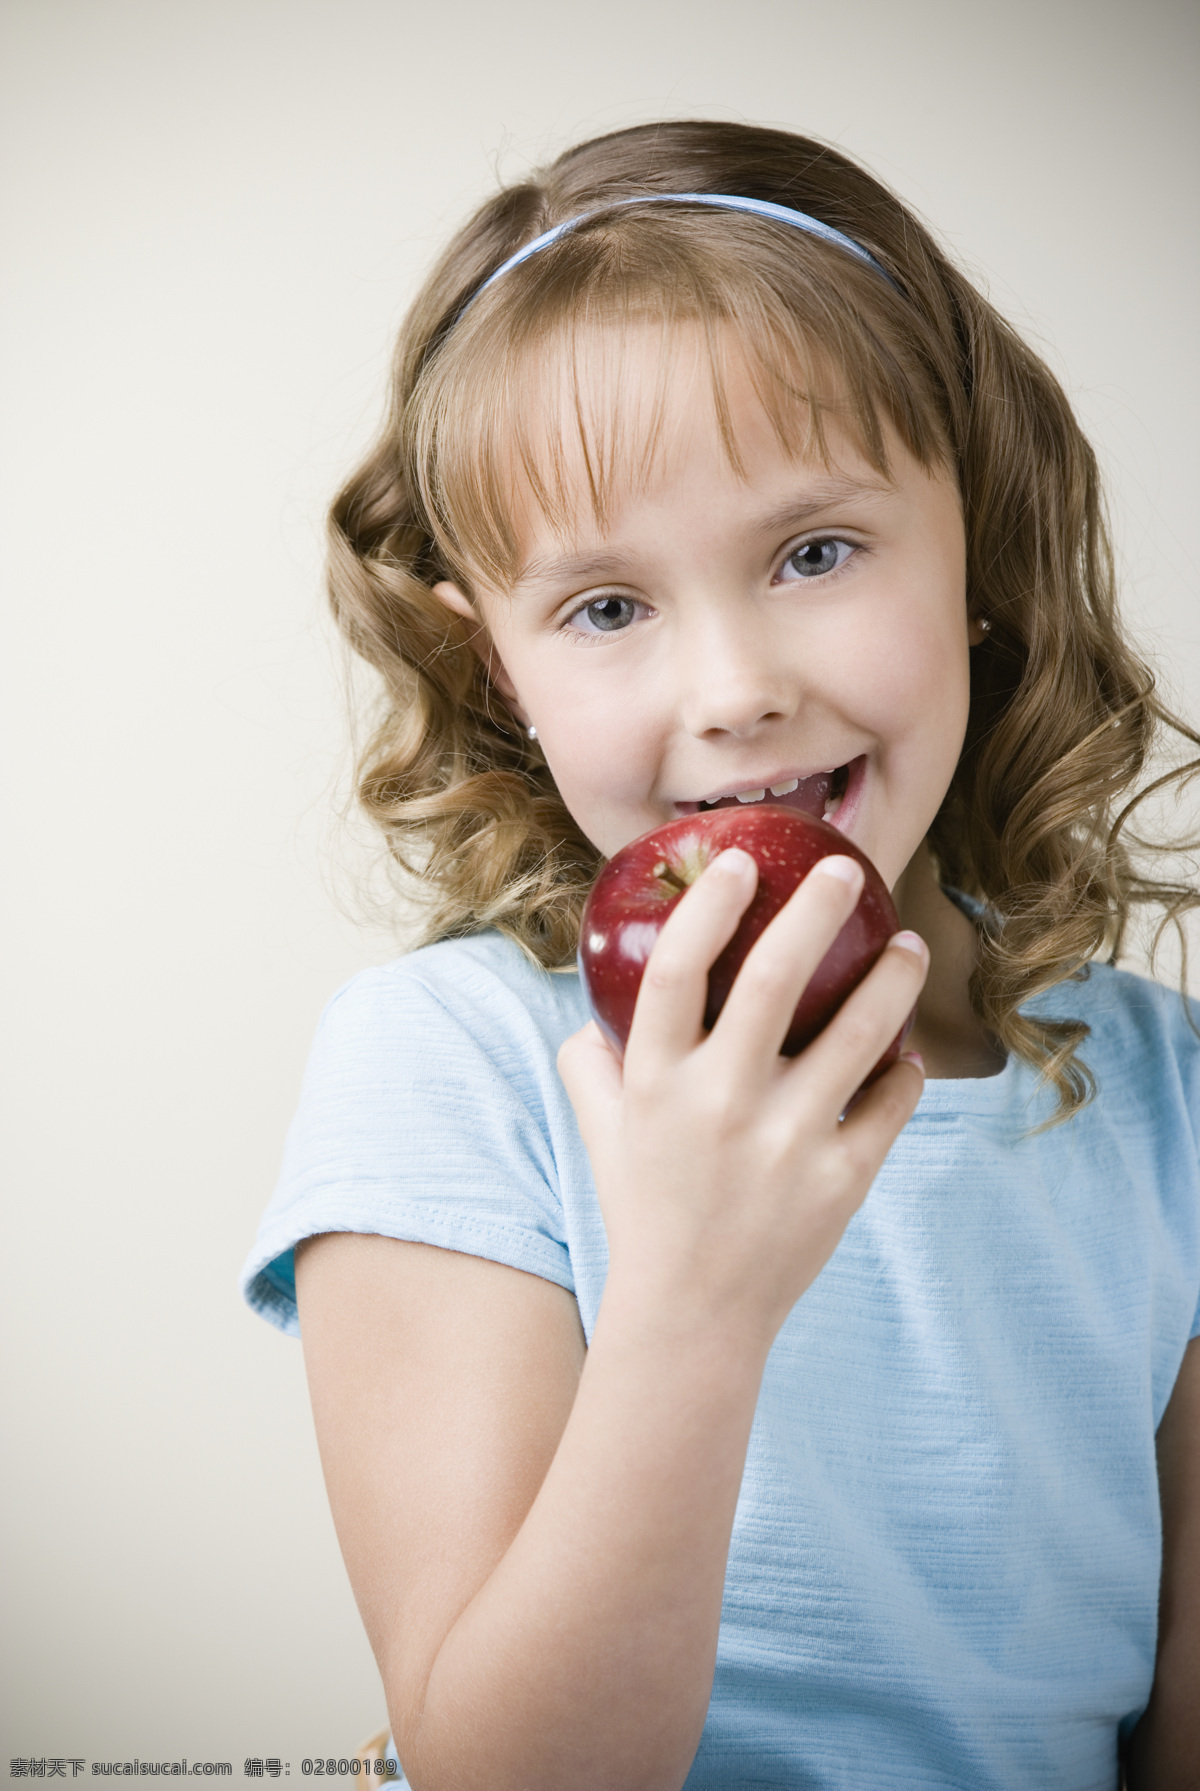 吃苹果小女孩 吃苹果 漂亮小女孩 可爱小女孩 微笑小女孩 儿童 孩子 小学生主题 儿童幼儿 人物图库